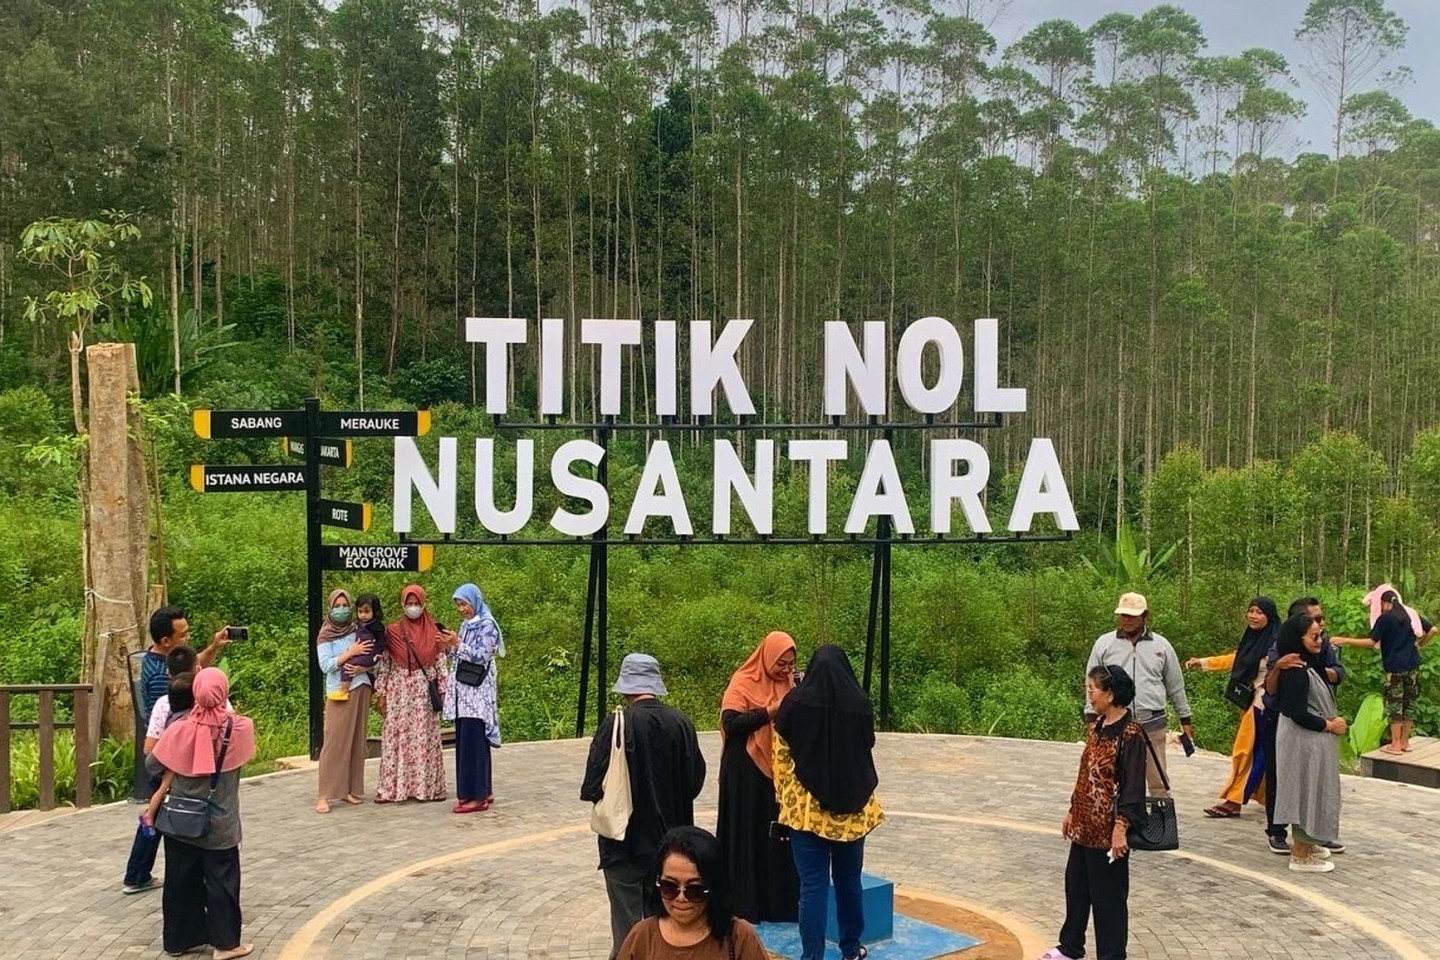 Einheimische besuchen das Gebiet, das als «Nusantara Ground Zero» bezeichnet wird. Hier entsteht gerade Nusantara, die neue Hauptstadt Indonesiens.